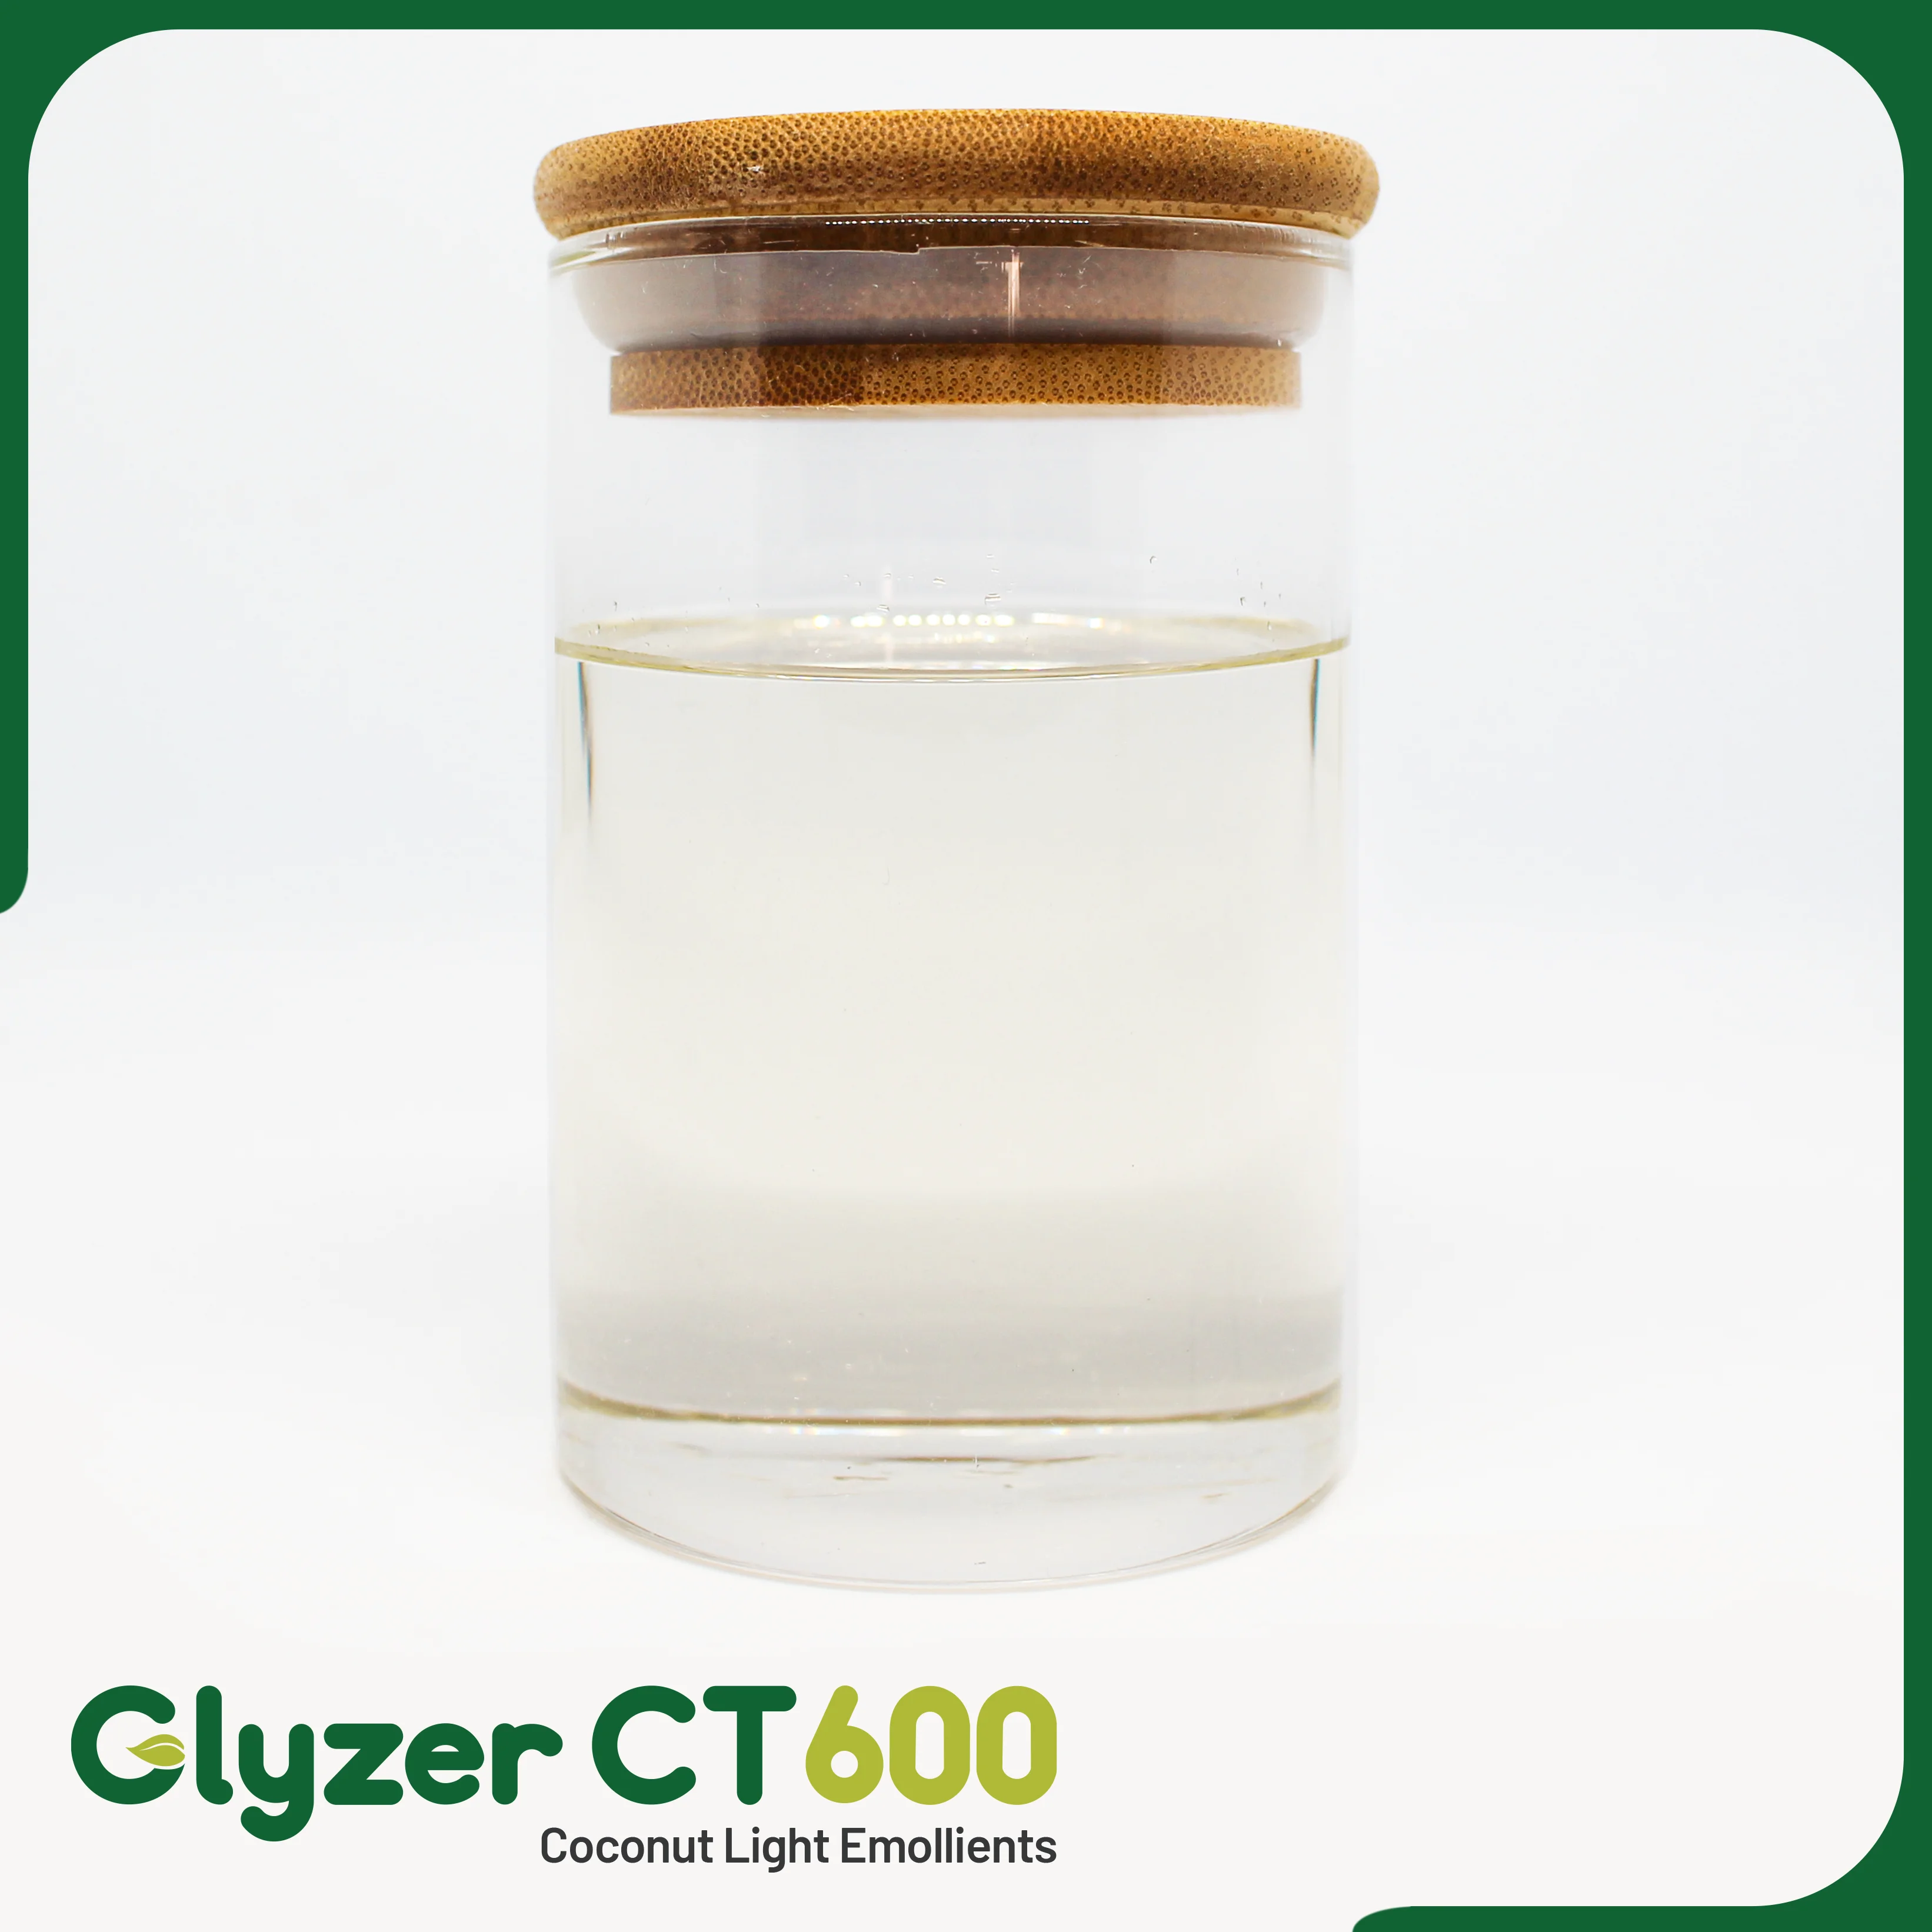 Glyzer-CT600